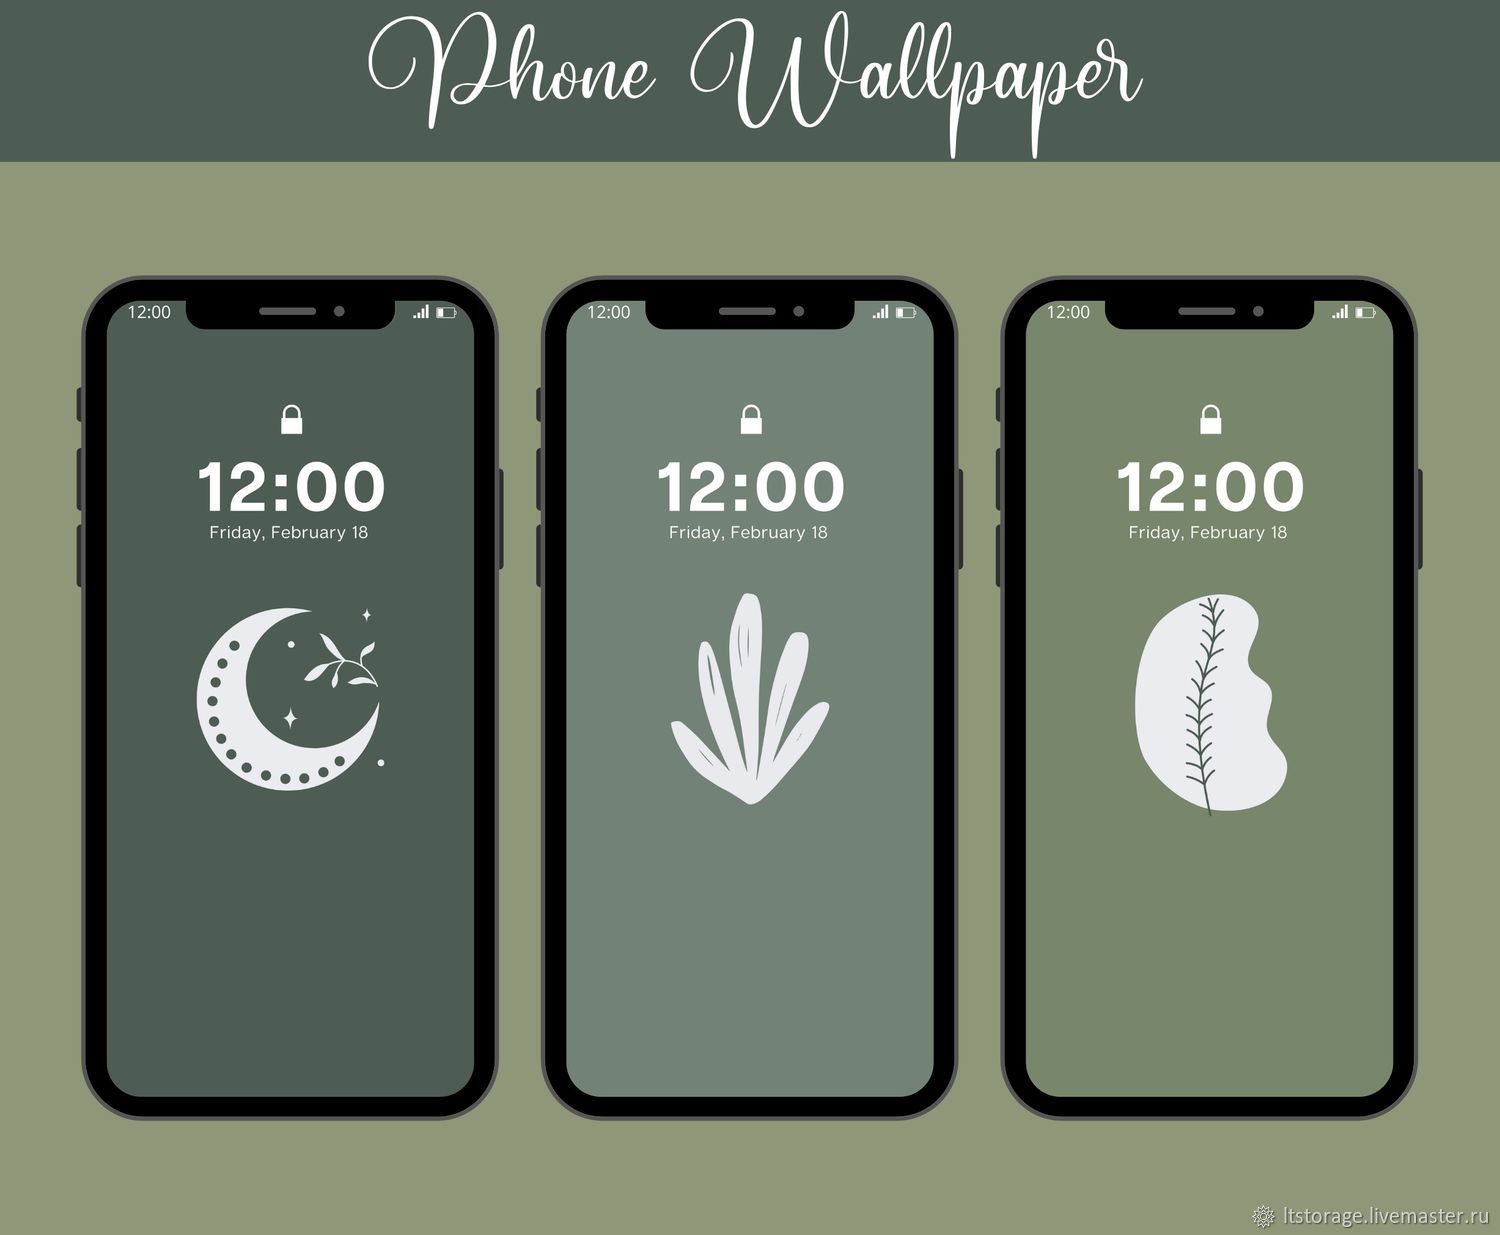 Wallpaper iPhone | Живописные узоры, Иллюстрации, Рисунки